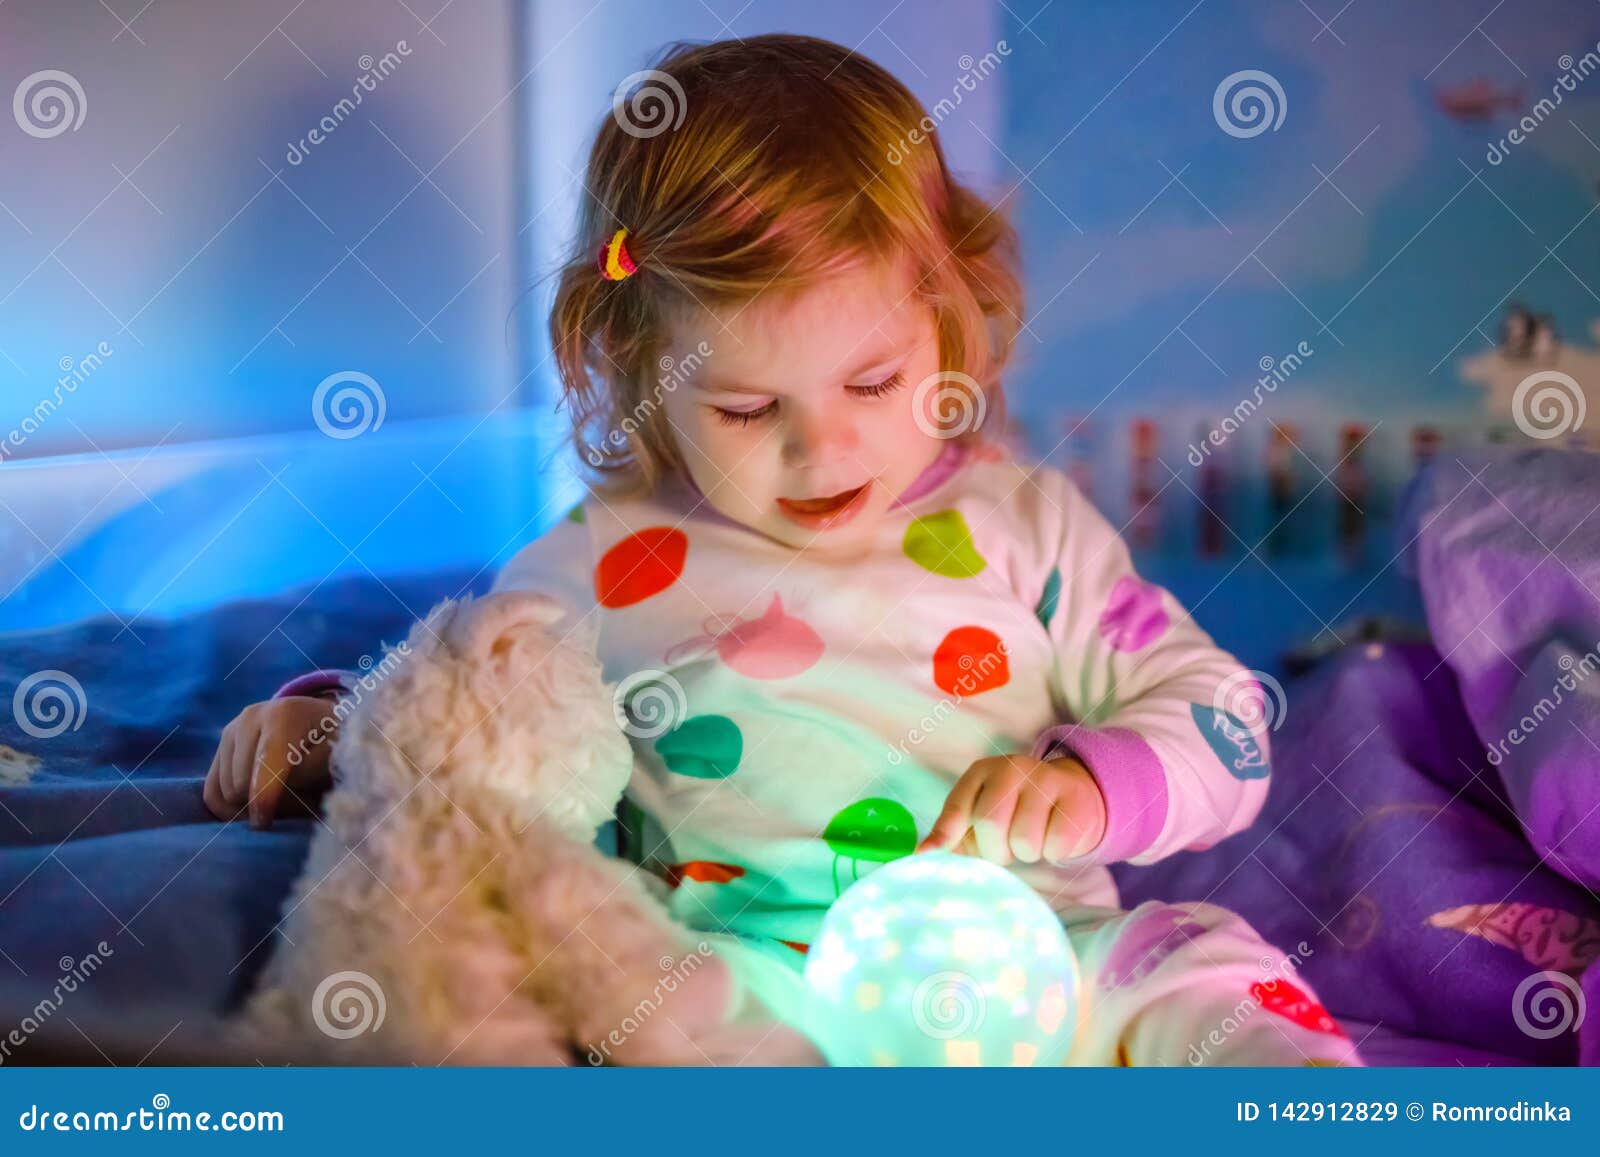 little girl night light